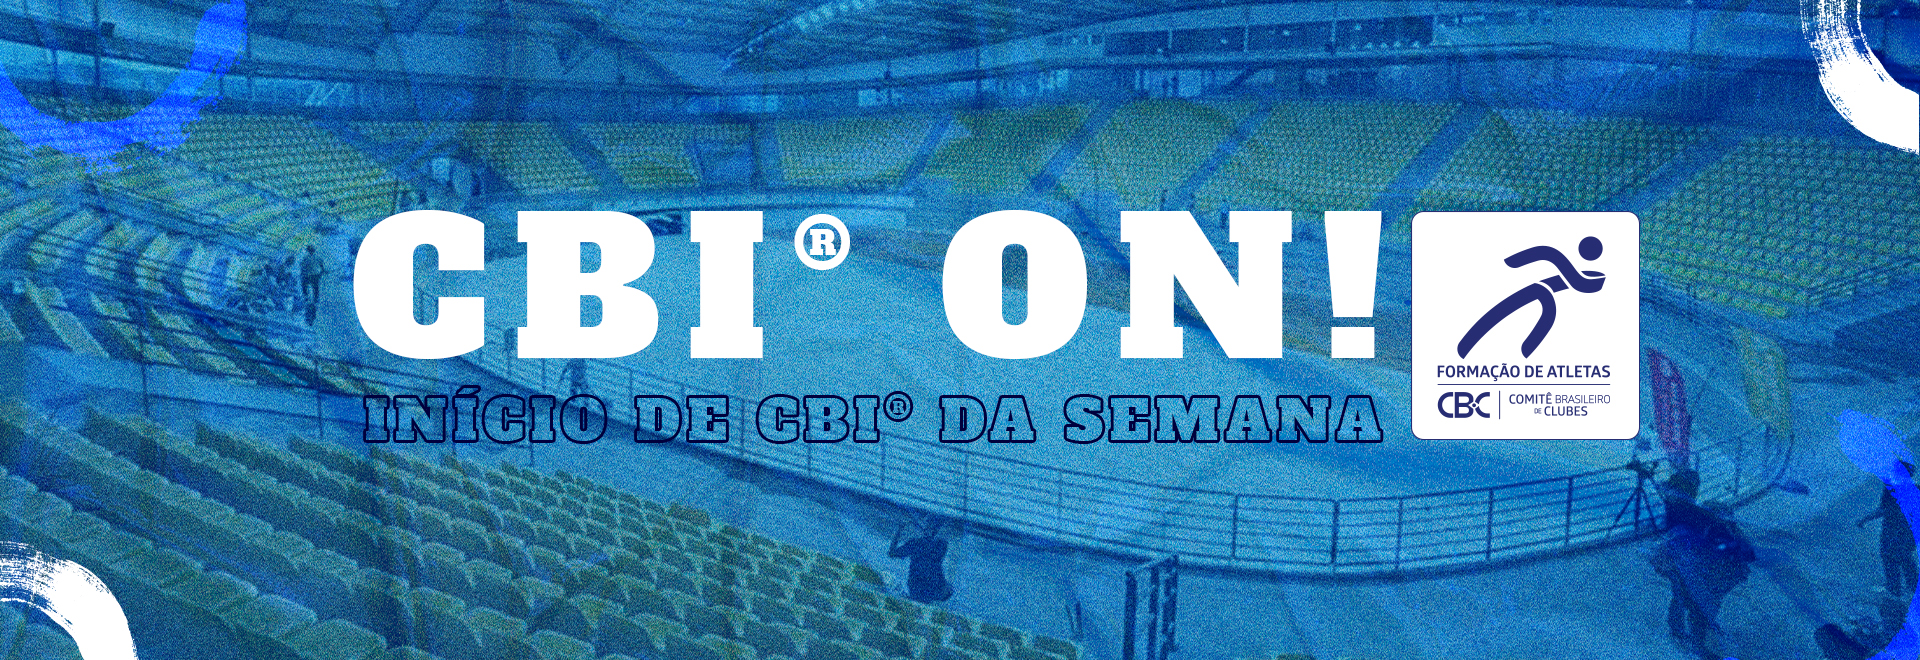  CBI® ON: Semana marca início de quatro Campeonatos Brasileiros Interclubes